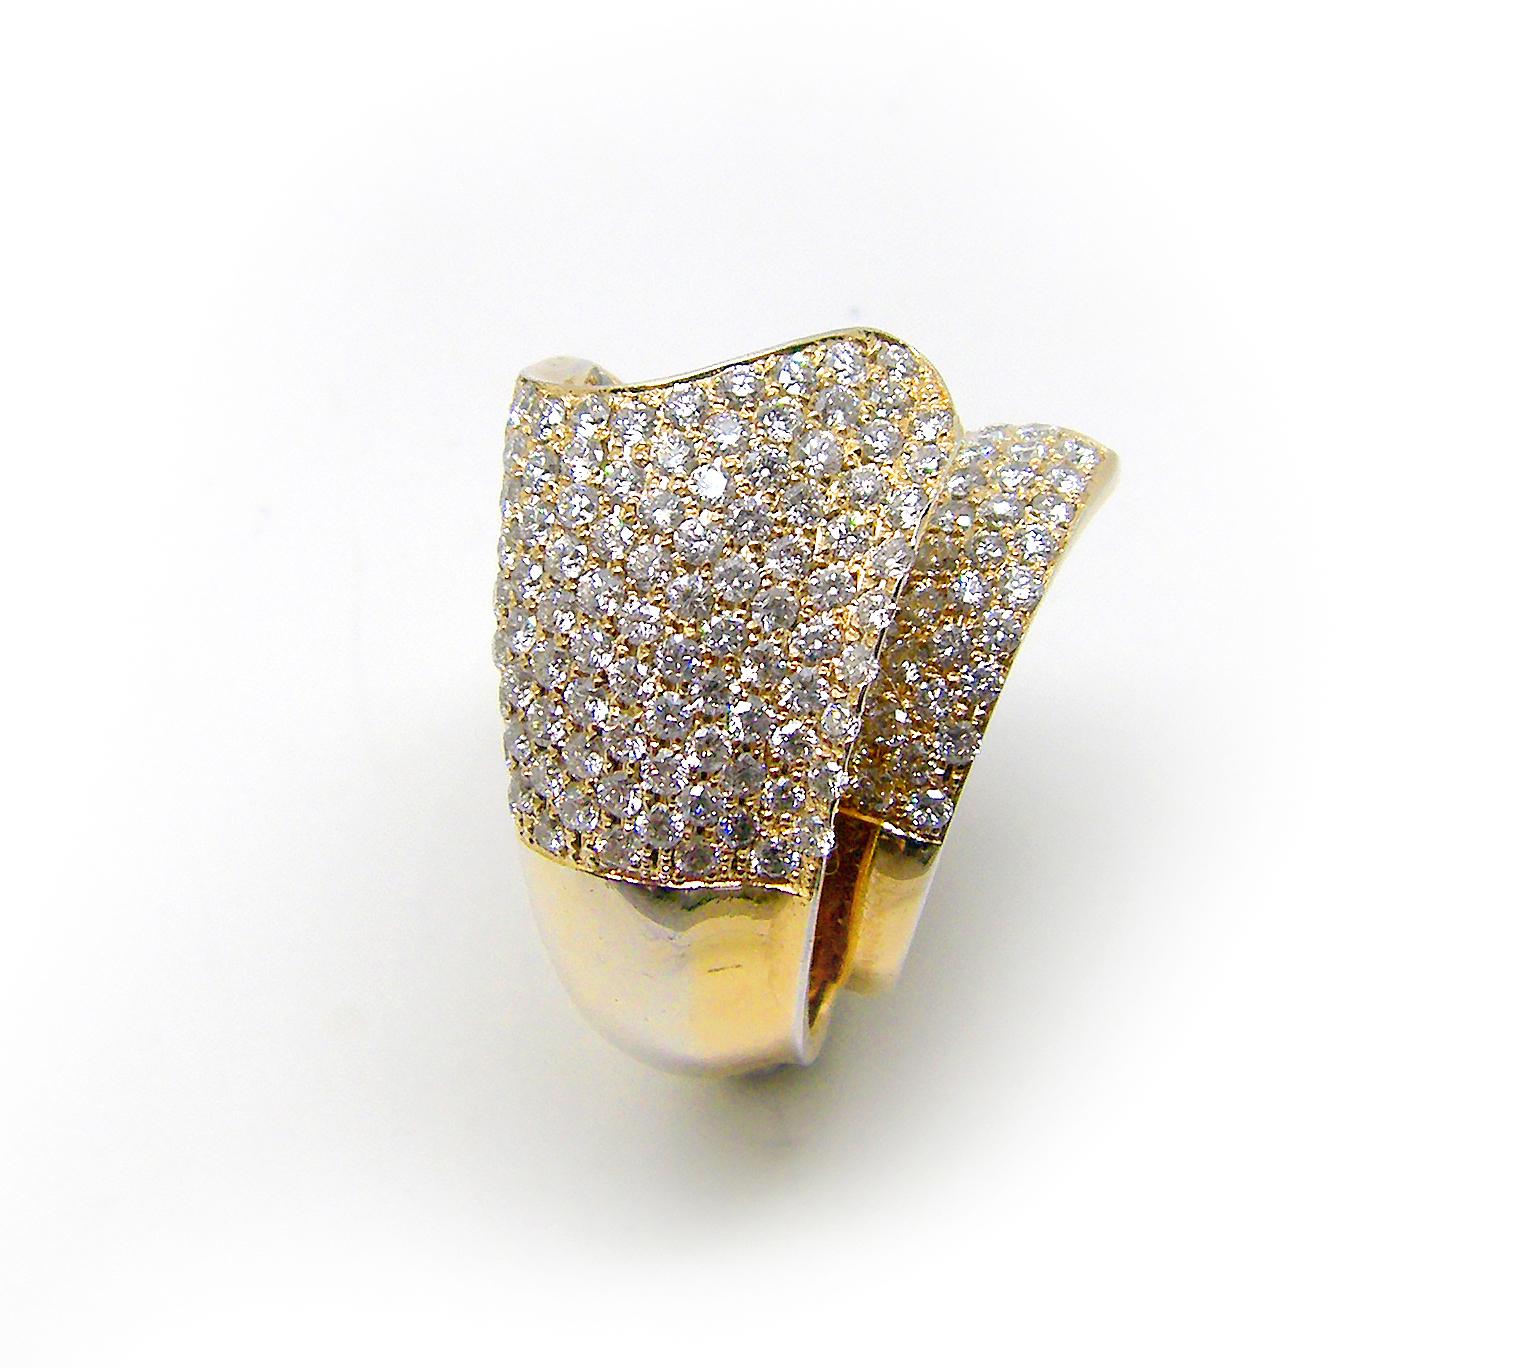 Dieser S.Georgios Designer 18 Karat Rose Gold White Brilliant Cut Diamond Wide Band Ring ist alles handgefertigt in einem einzigartigen Design. Das wunderschöne breite Band ist mit weißen Diamanten im Brillantschliff mit einem Gesamtgewicht von 3,90